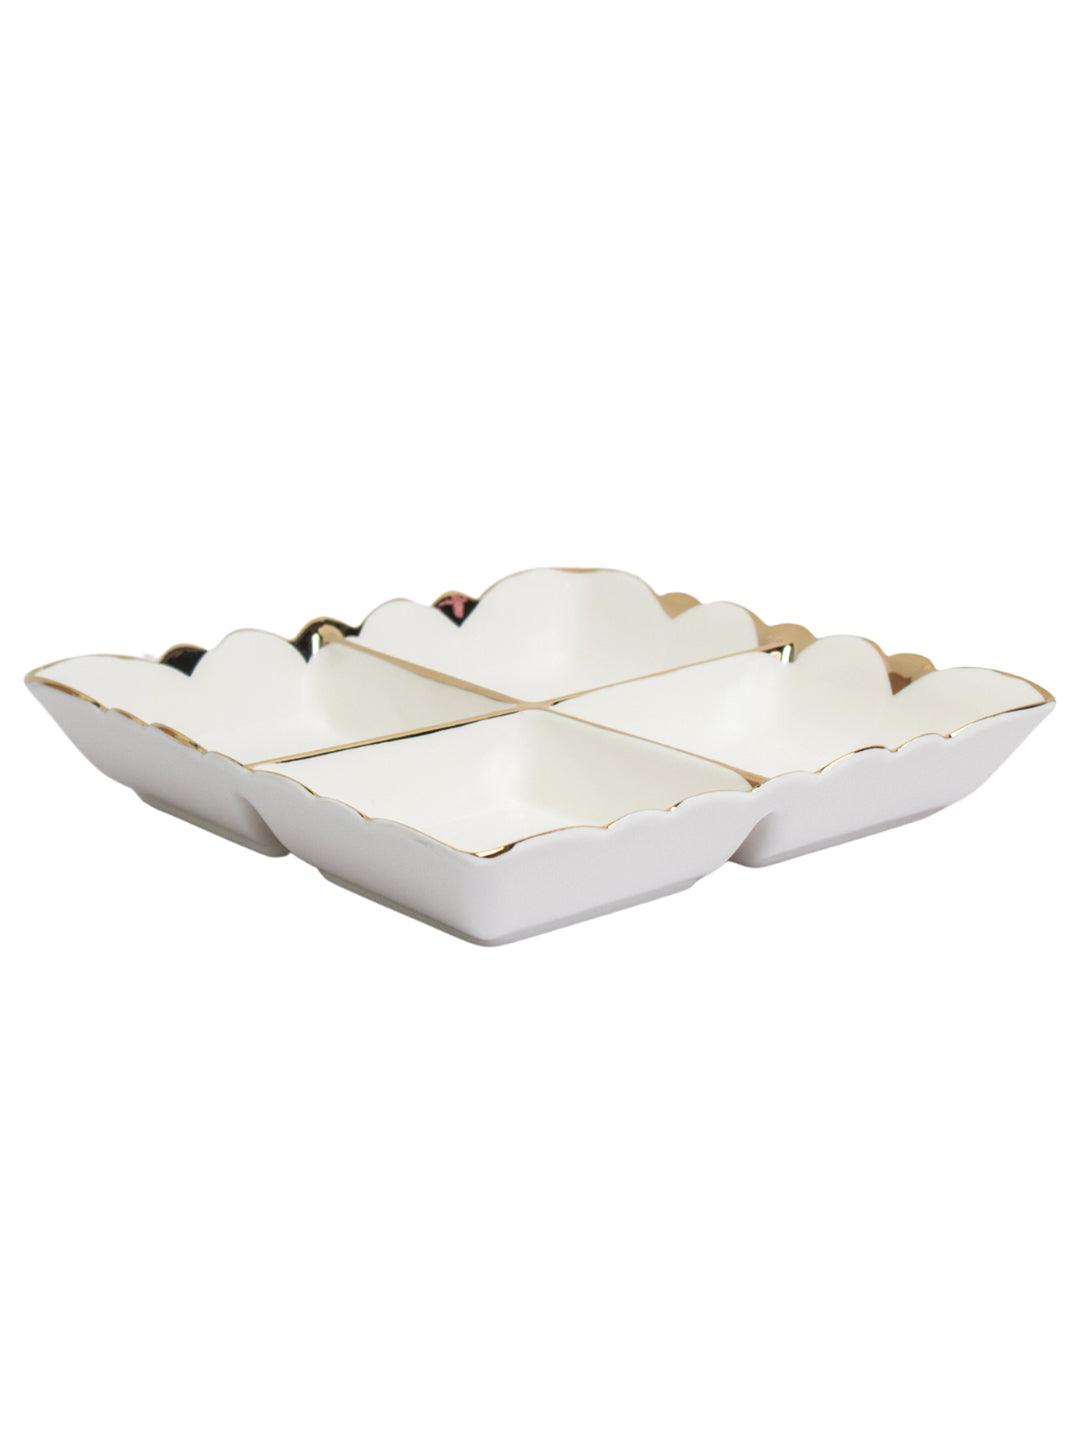 Buy Antique Off White Ceramic Square Serving Dish - 12 x 12 x 7CM